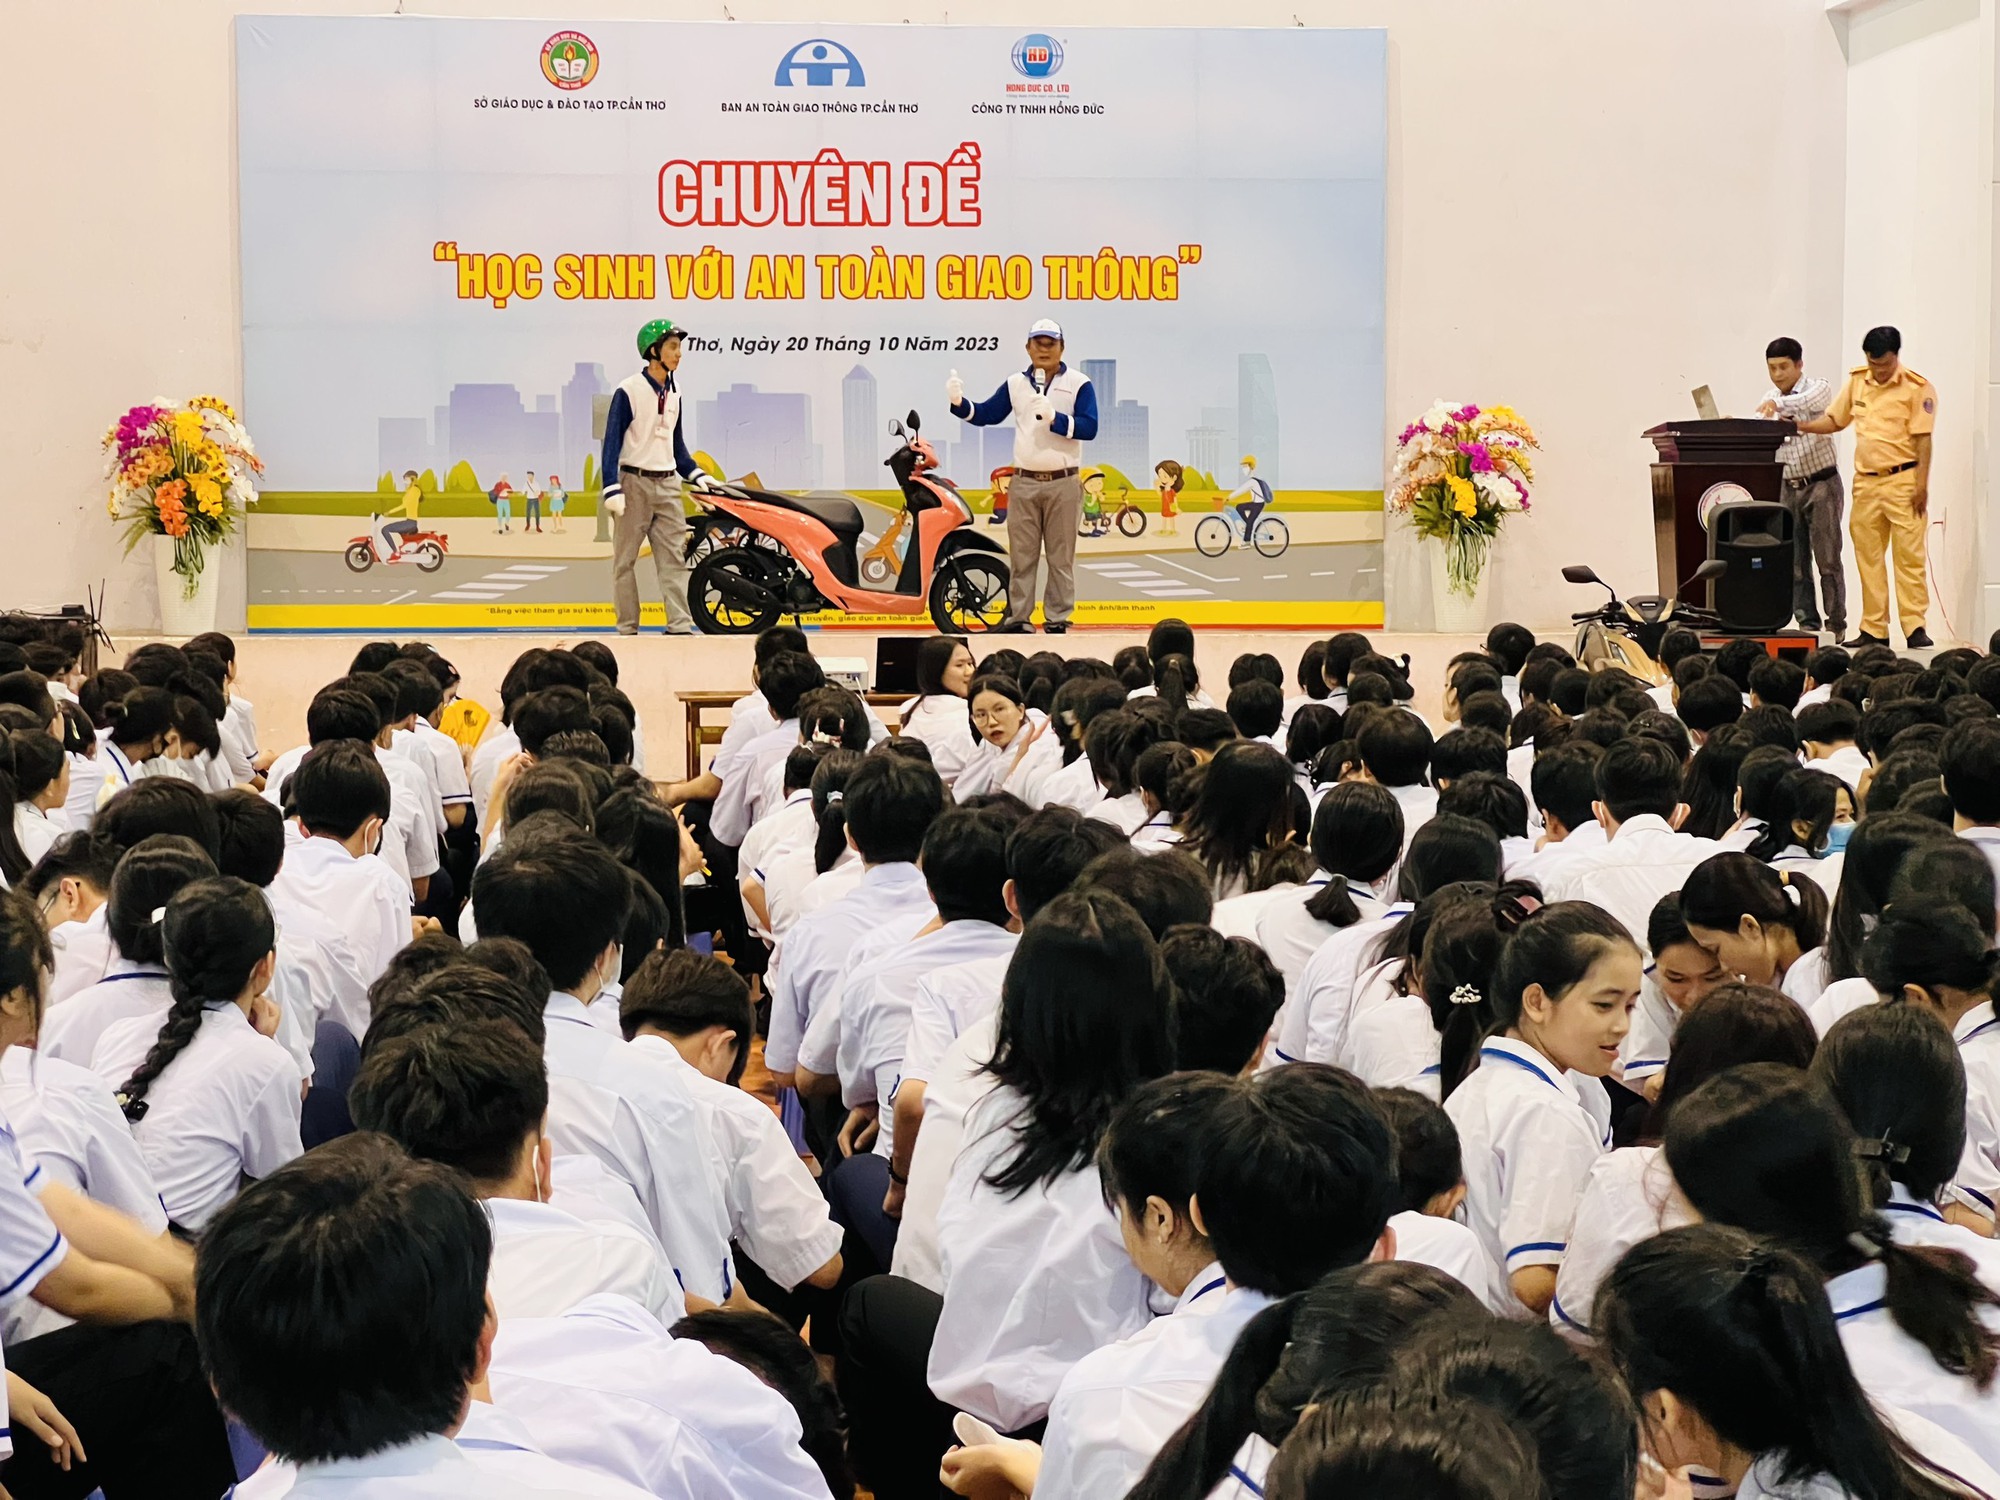 Hàng ngàn học sinh cấp 3 ở Cần Thơ háo hức nhận quà, nghe tuyên truyền an toàn giao thông - Ảnh 2.